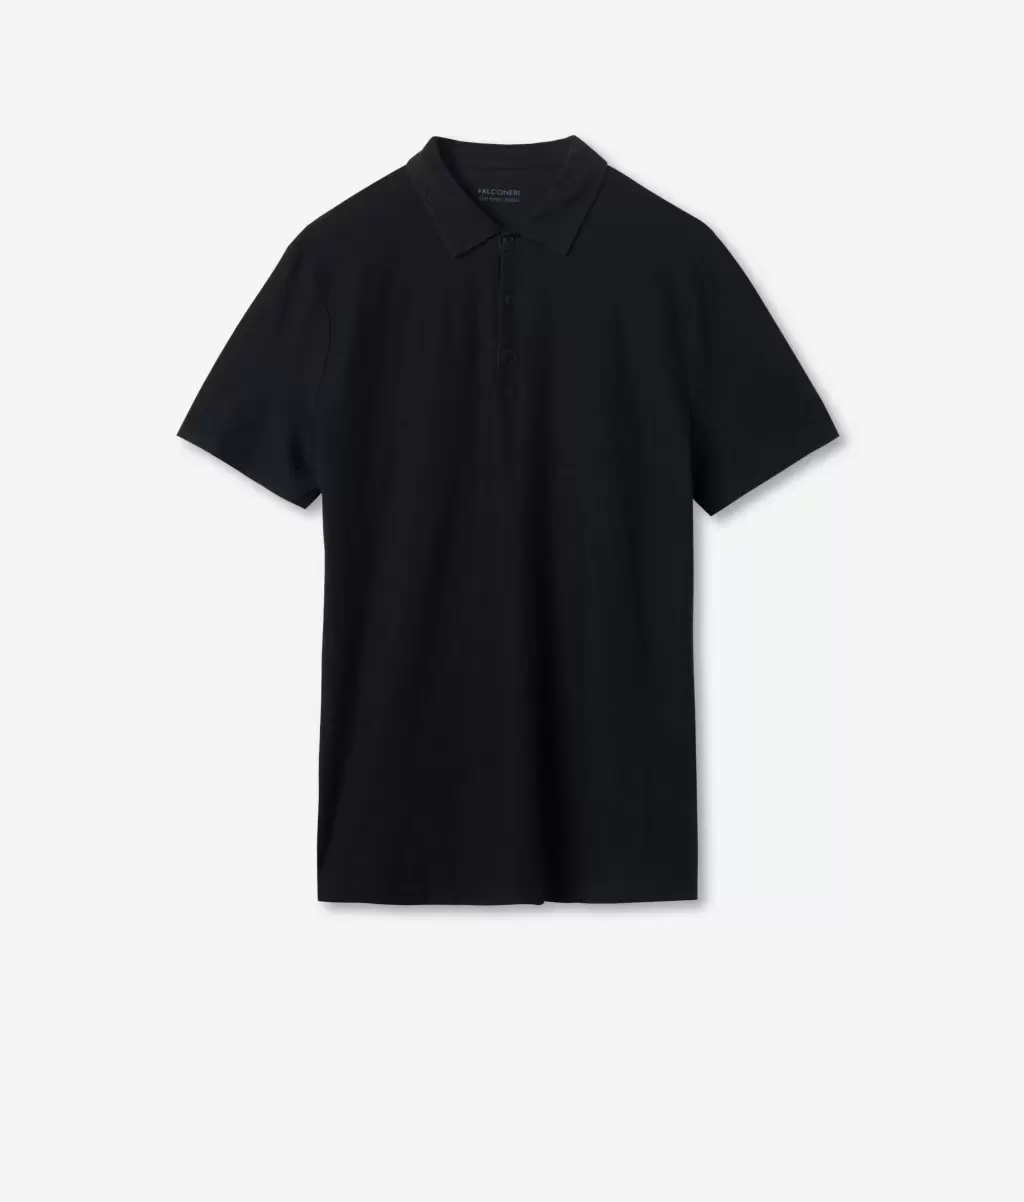 Falconeri Mężczyzna T-Shirty I Koszulki Polo Black Koszulka Polo Z Bawełny Twist - 4